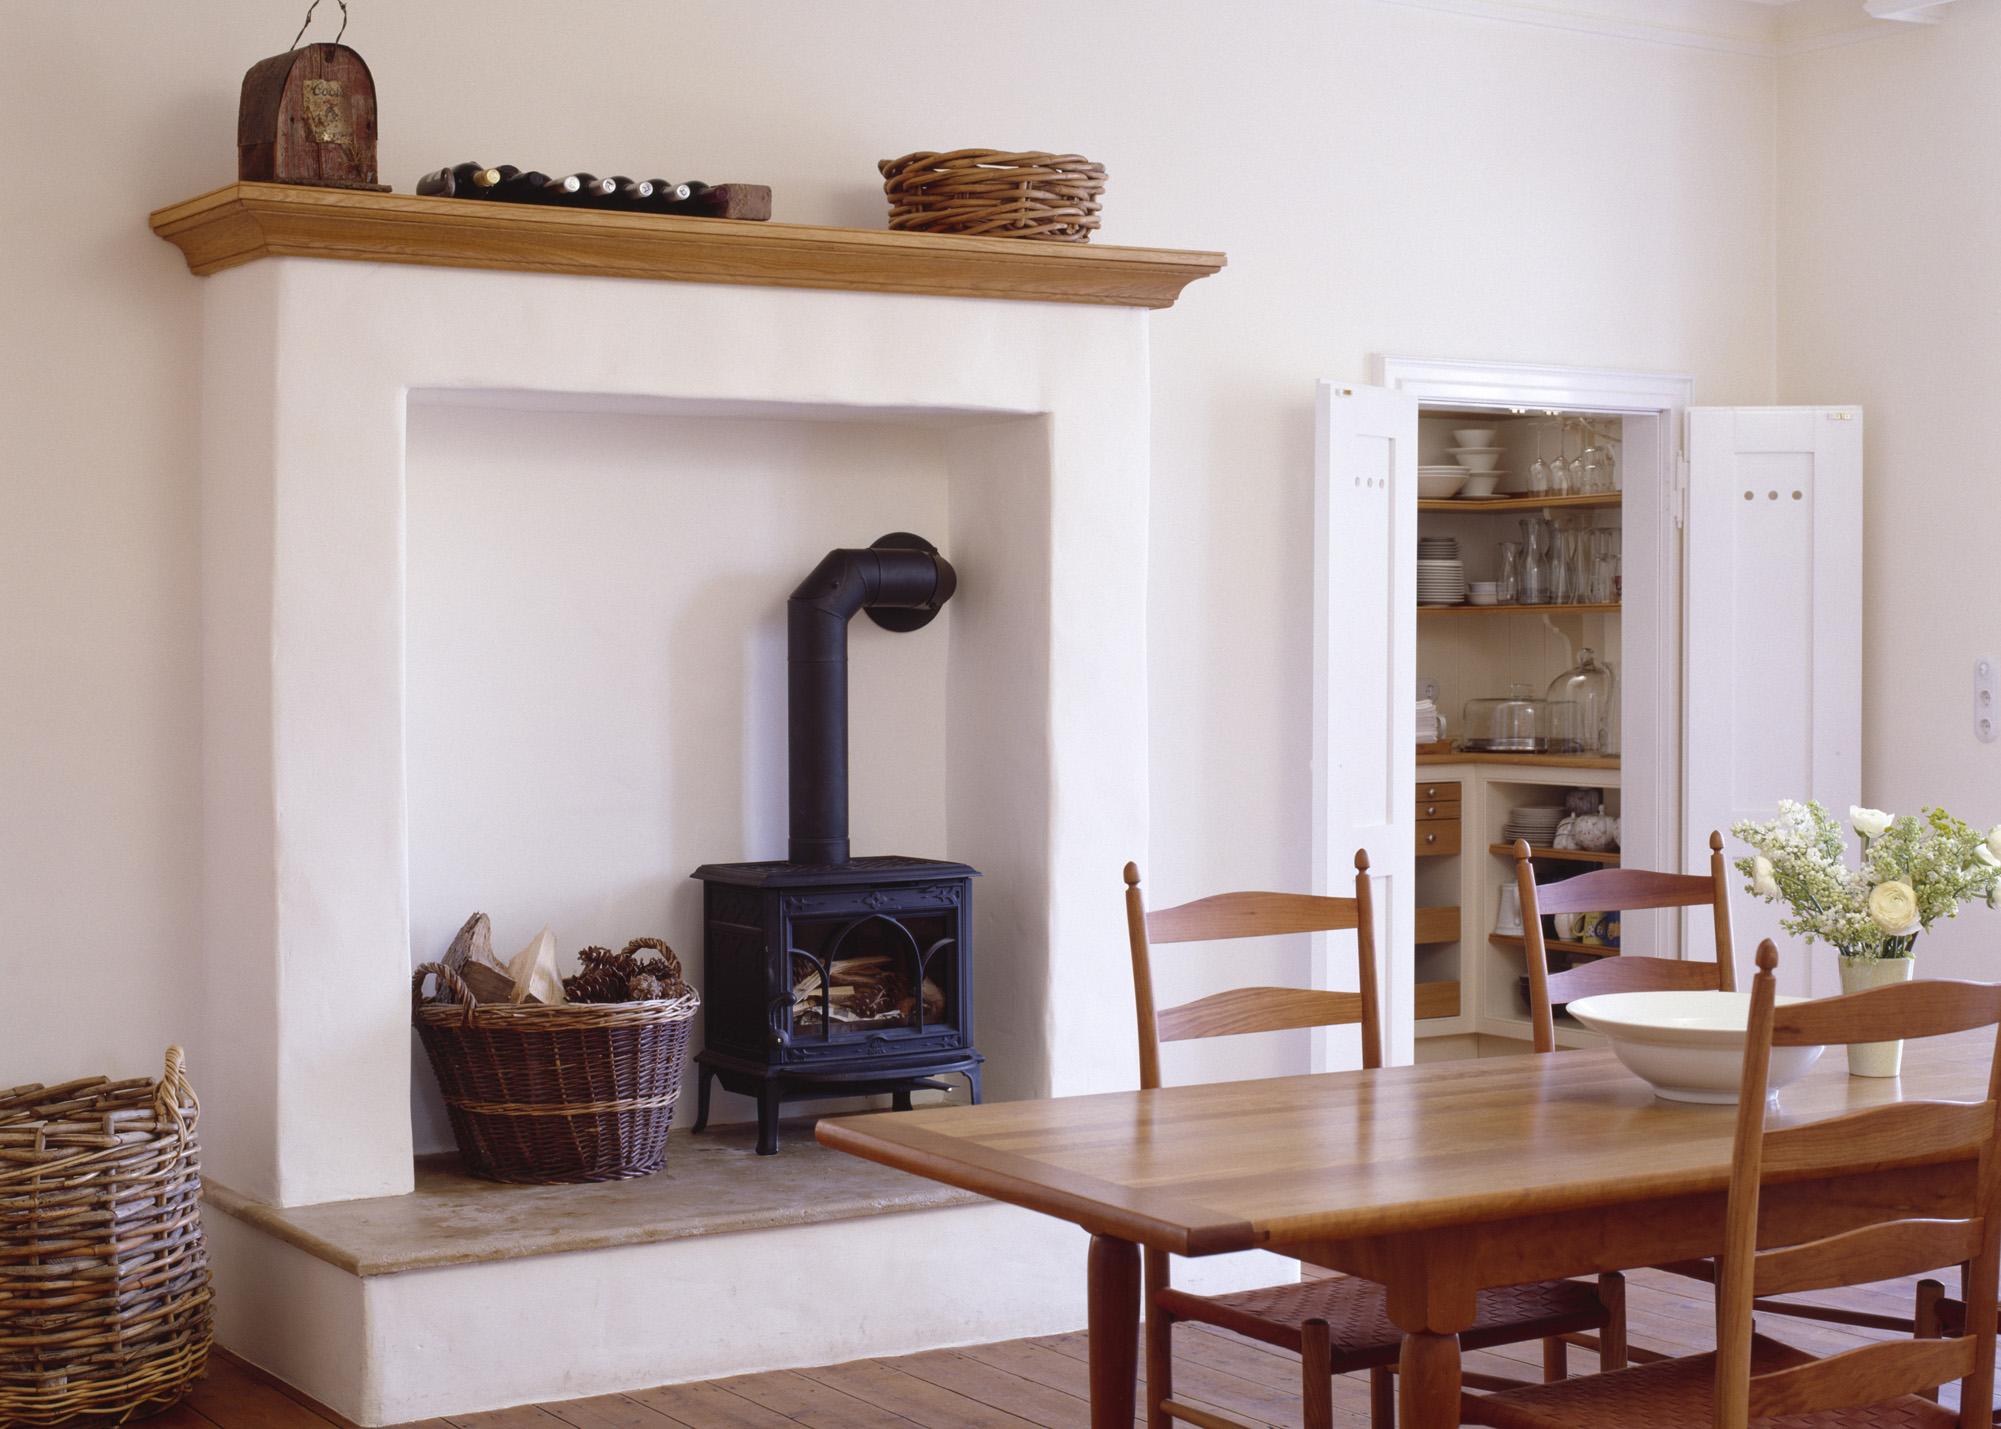 Kaminsims gestalten #küche #kamin #landhausstil #kaminsims #zimmergestaltung ©Robinson & Cornish